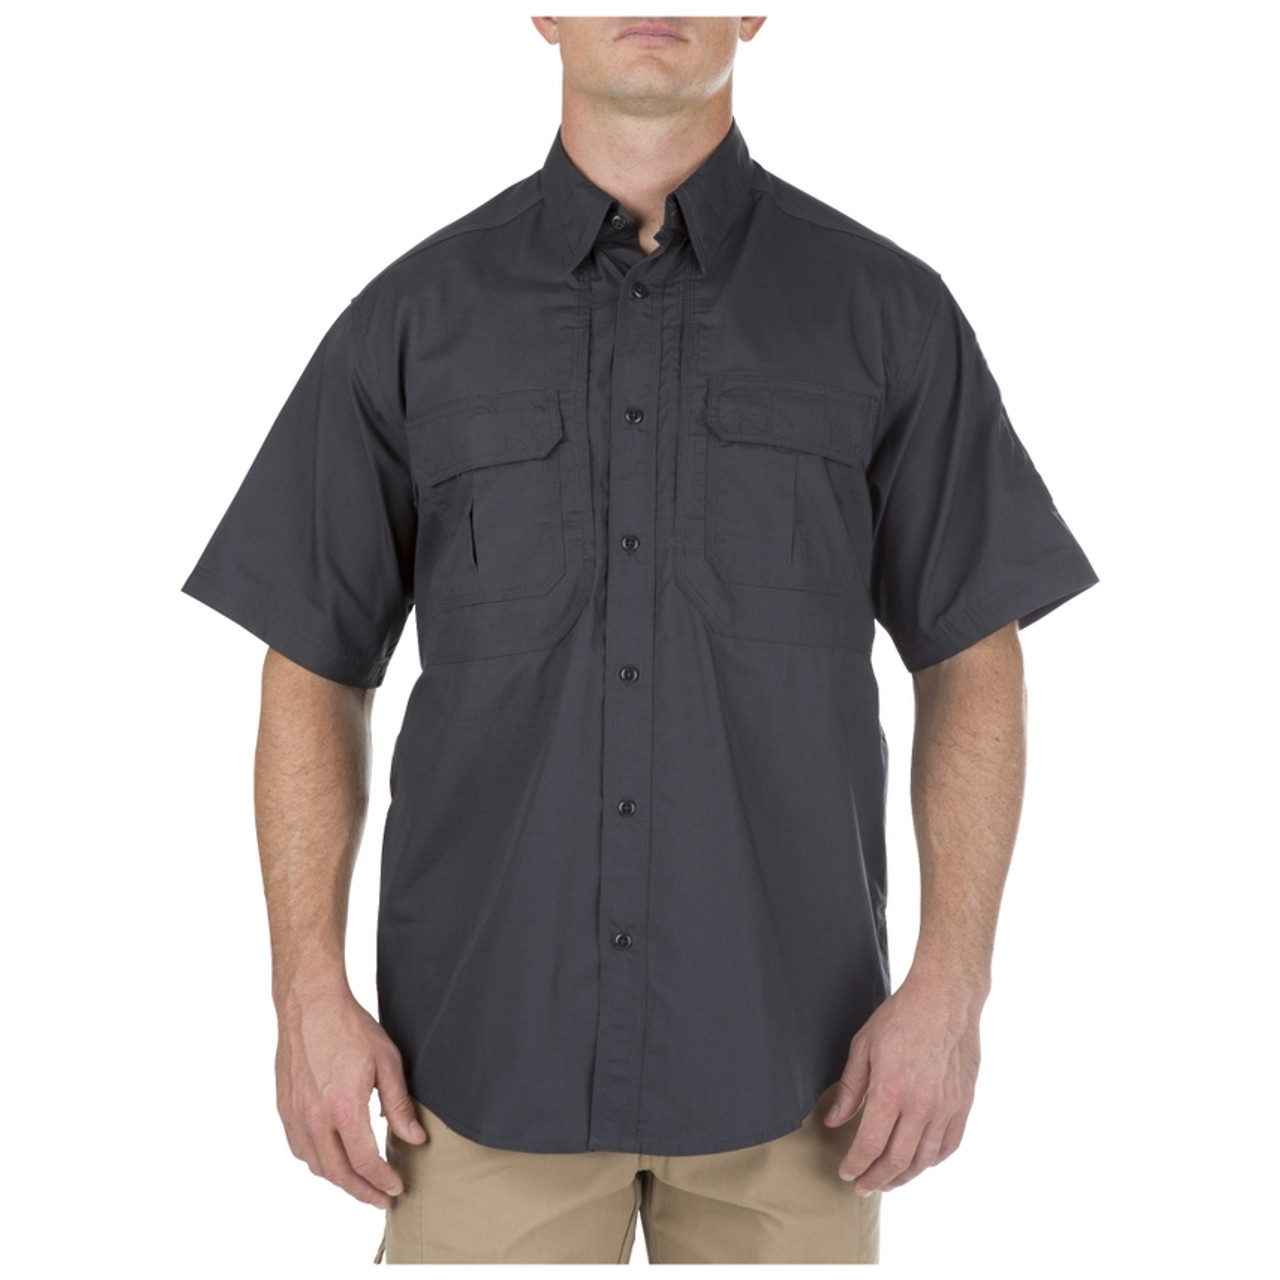 5.11 Tactical 71175 TacLite Pro Short Sleeve Shirt - Atlantic Tactical Inc